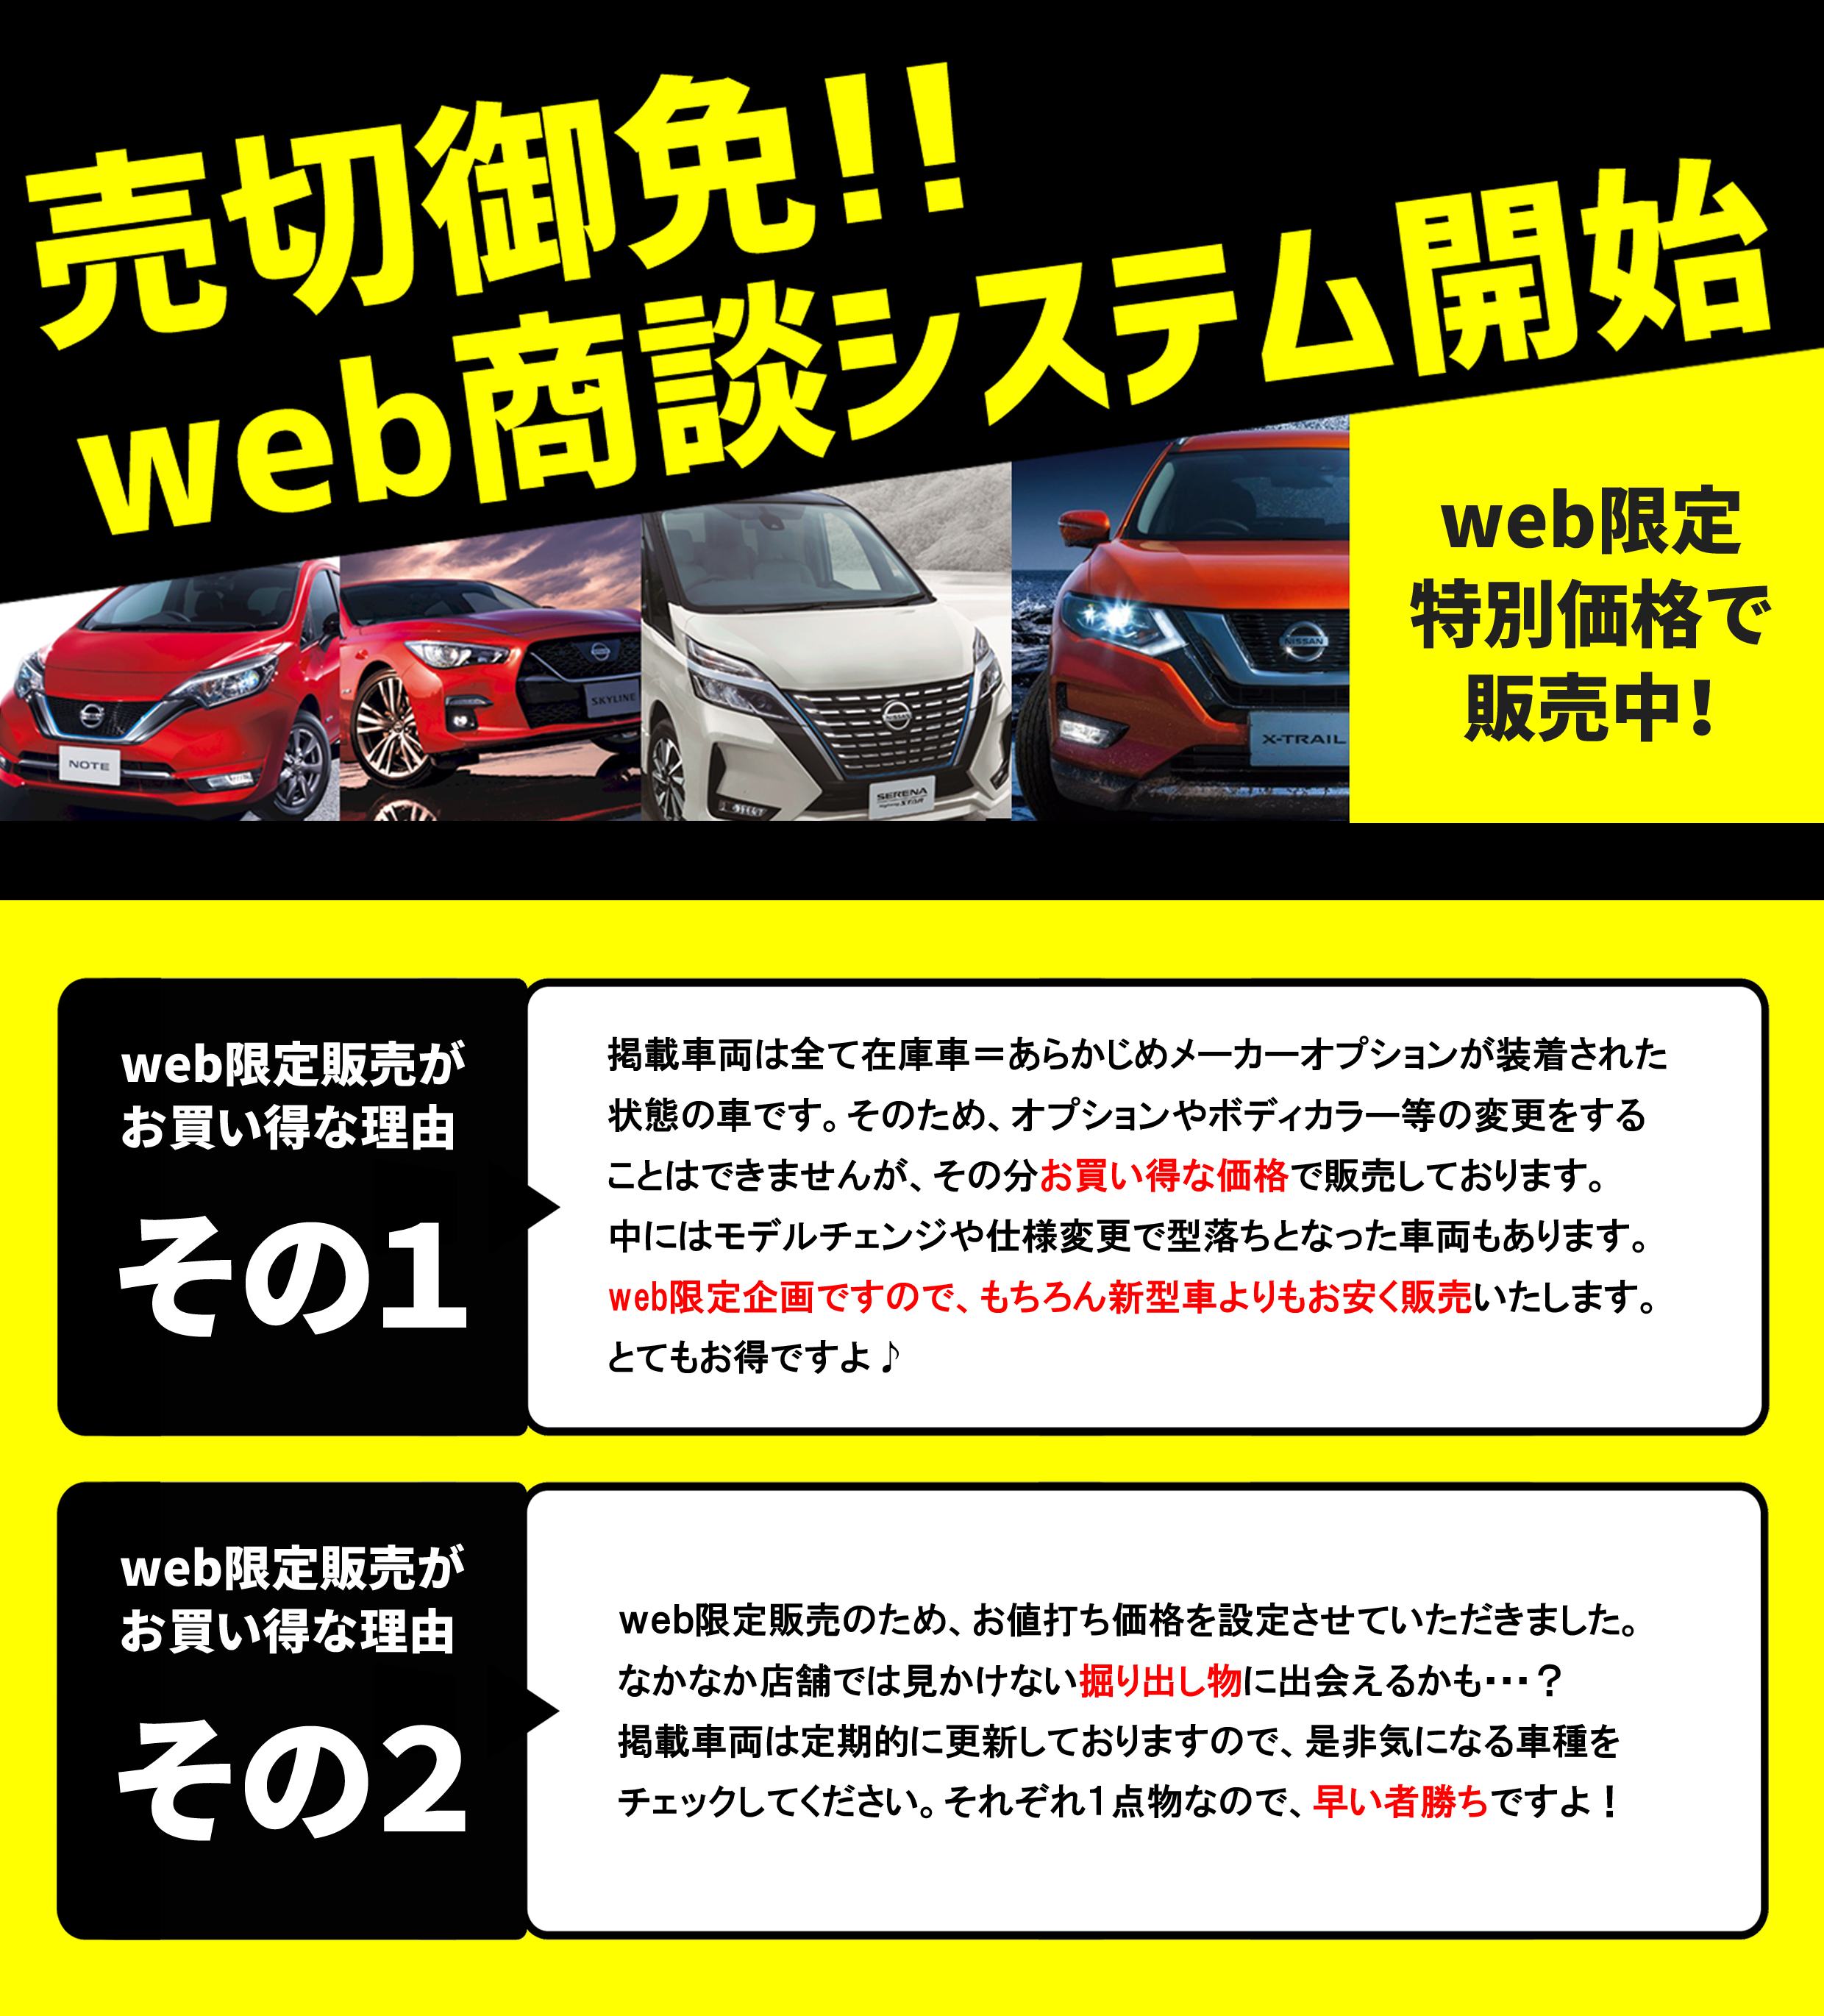 奈良日産自動車株式会社 Web商談システム はじめました